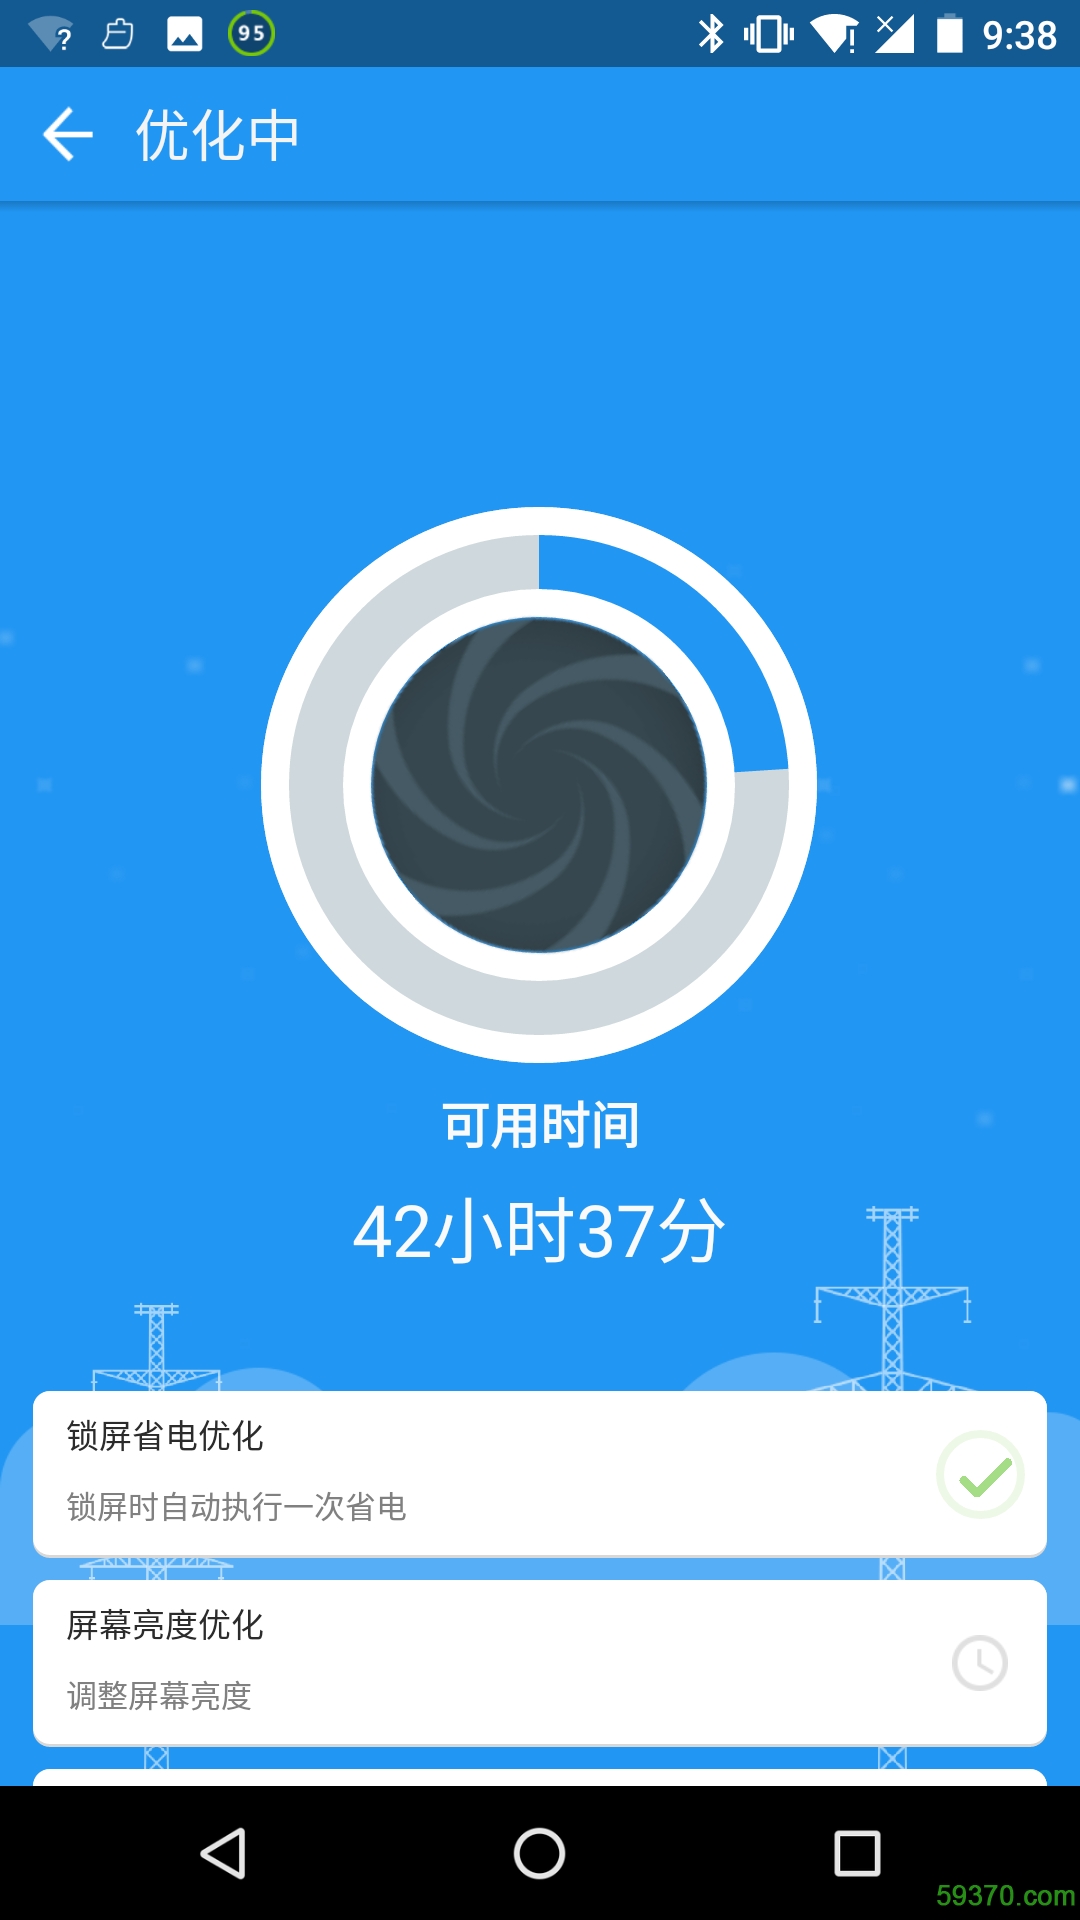 360省电王2017版 v5.5.0.170217 最新安卓版 2